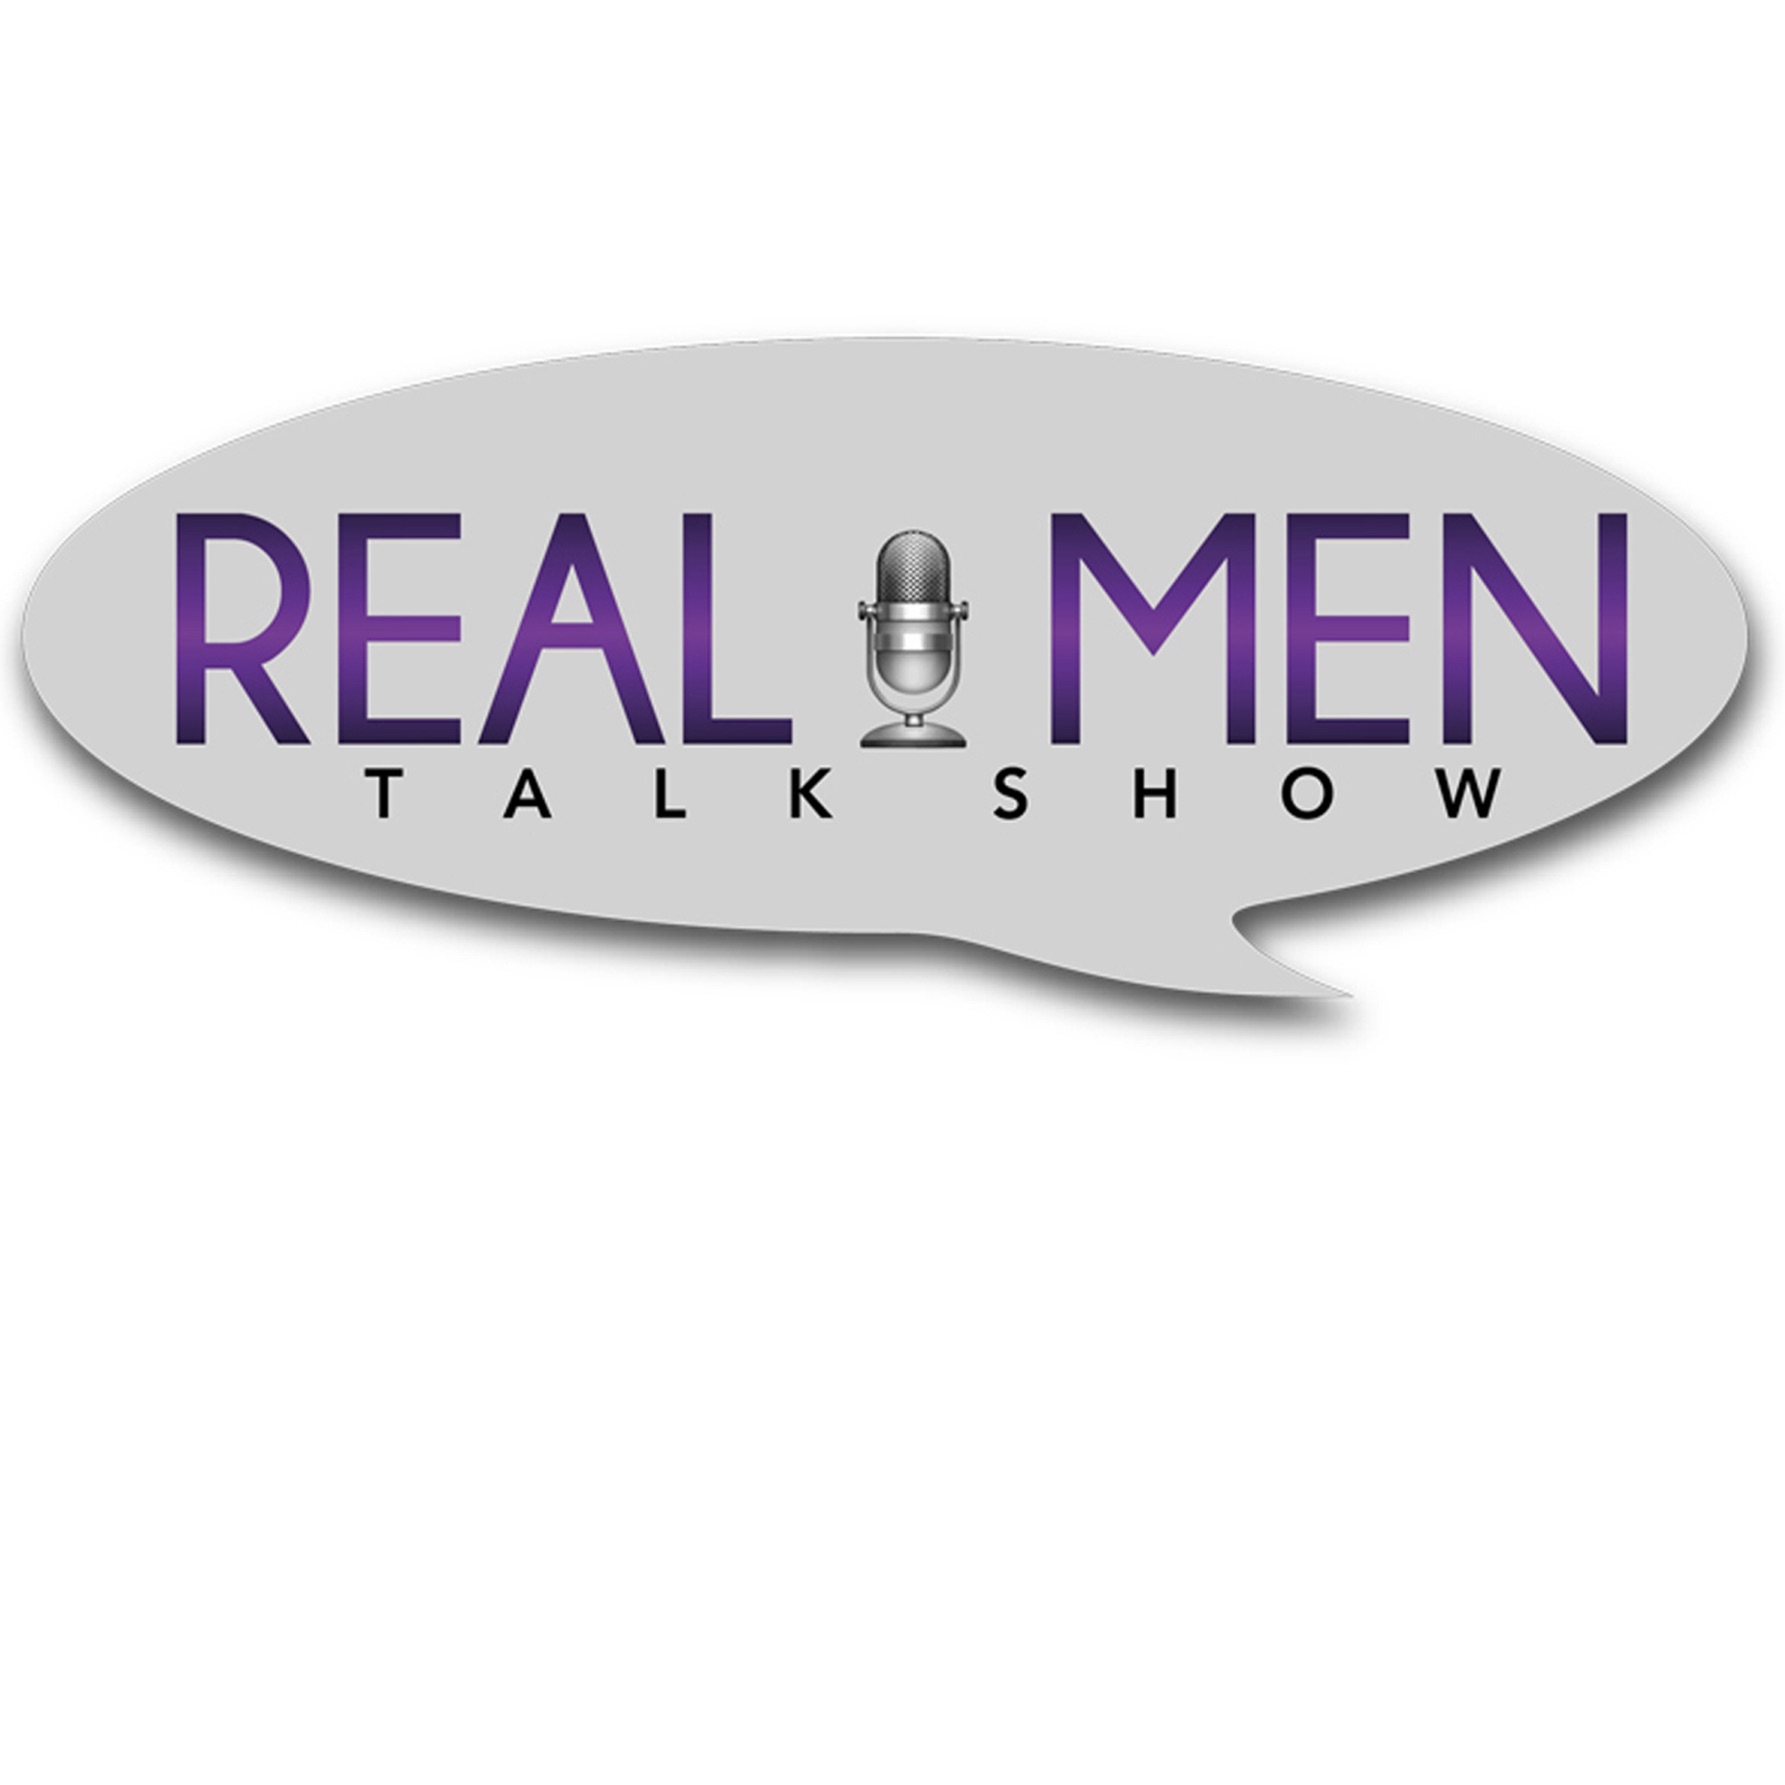 Real Men Talk Show